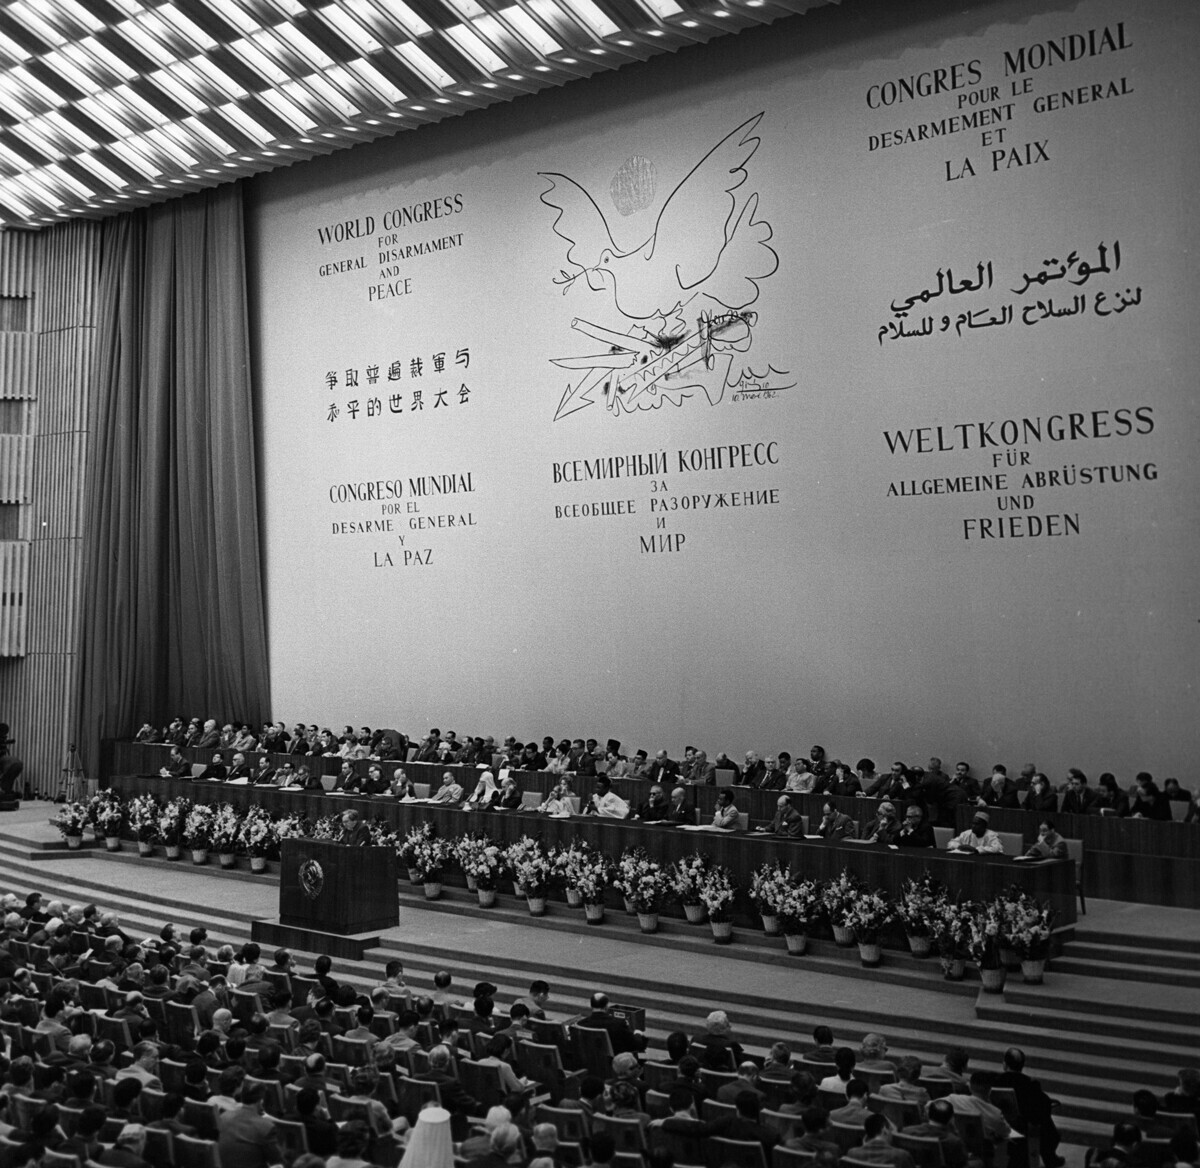 Светски конгрес за разоружување и мир, Москва, 1962.

